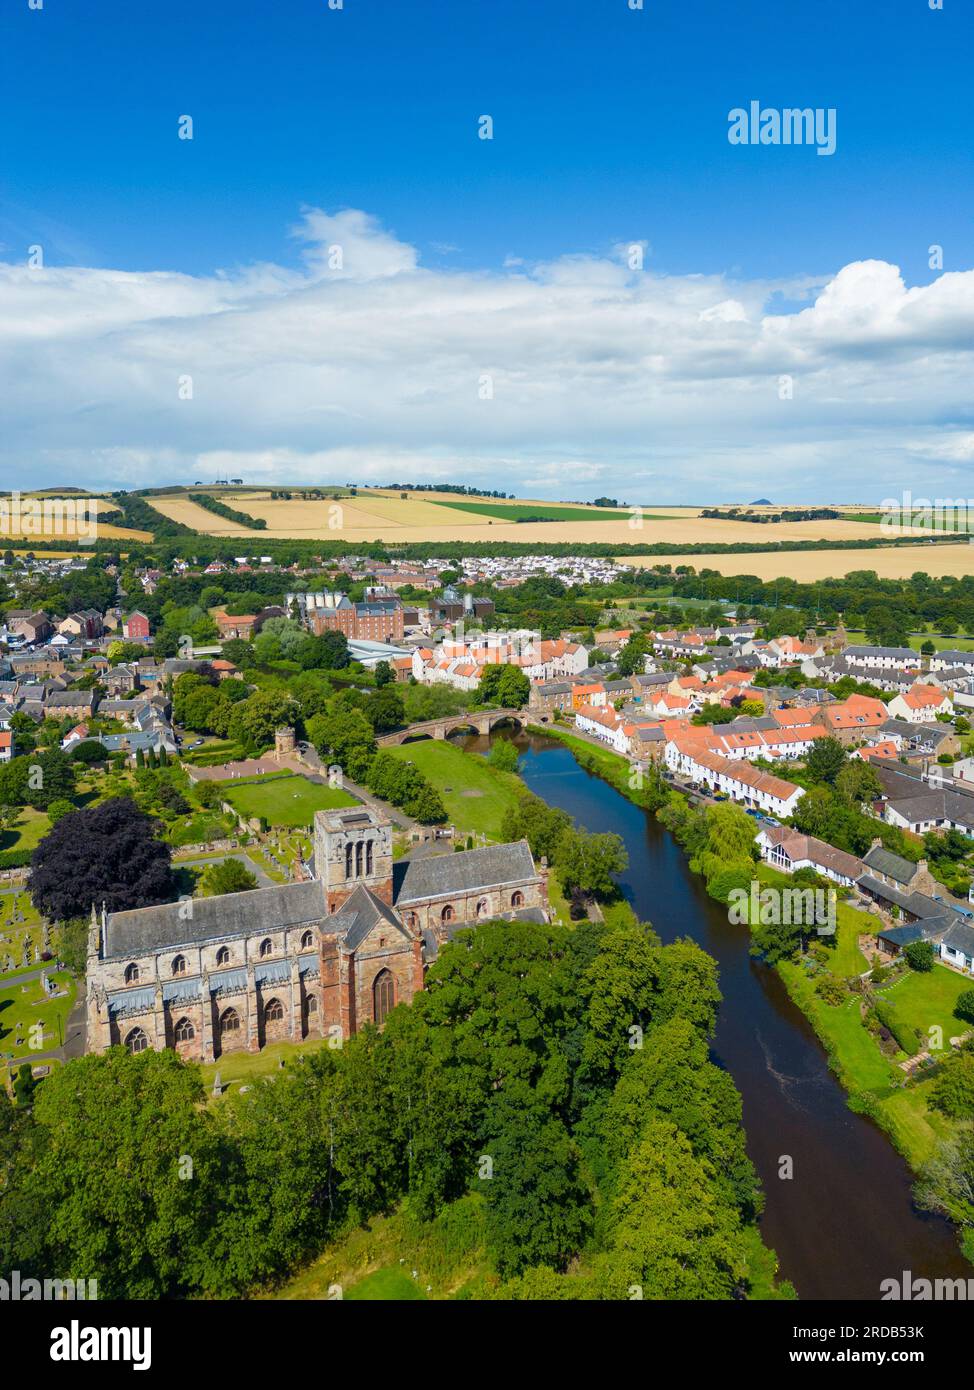 Vue aérienne de la ville de Haddington et de l'église paroissiale St Mary sur la rivière Tyne à East Lothian, Écosse, Royaume-Uni Banque D'Images